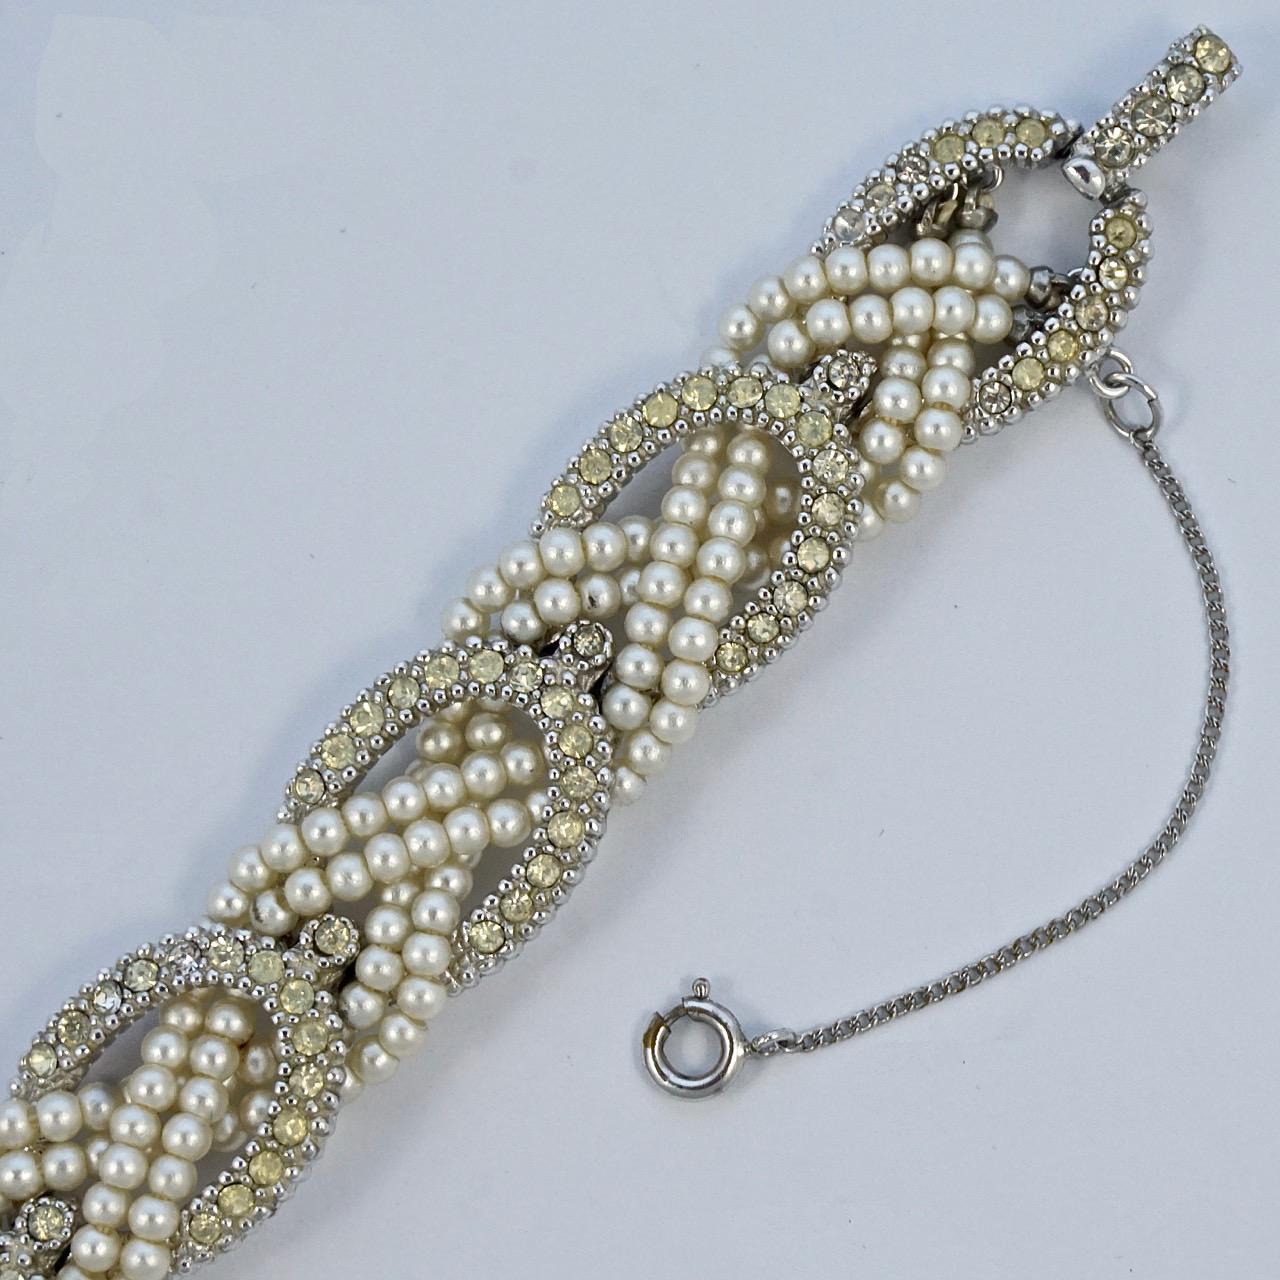 Fabuleux bracelet Ciner en métal argenté avec une chaîne de sécurité, comportant deux rangées de fausses perles ivoires et des liens en strass. Longueur 19.2cm / 7.5 inches et largeur 1.5cm / .6 inch. Le bracelet est en très bon état.

Il s'agit